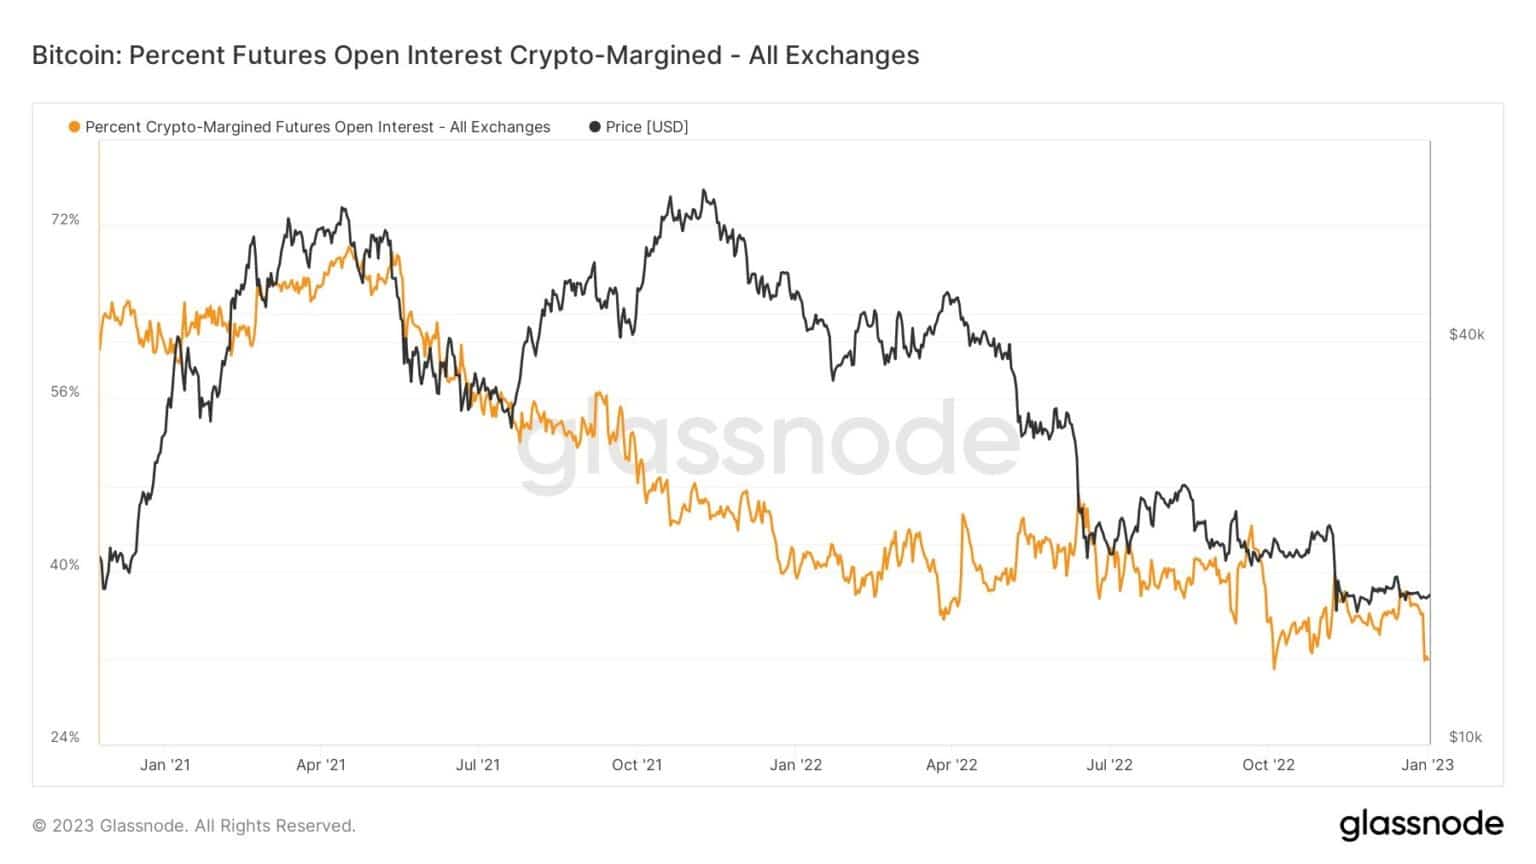 Bitcoin: Metrica dei Futures Open Interest cripto-marginati in percentuale - Fonte: Glassnode.com